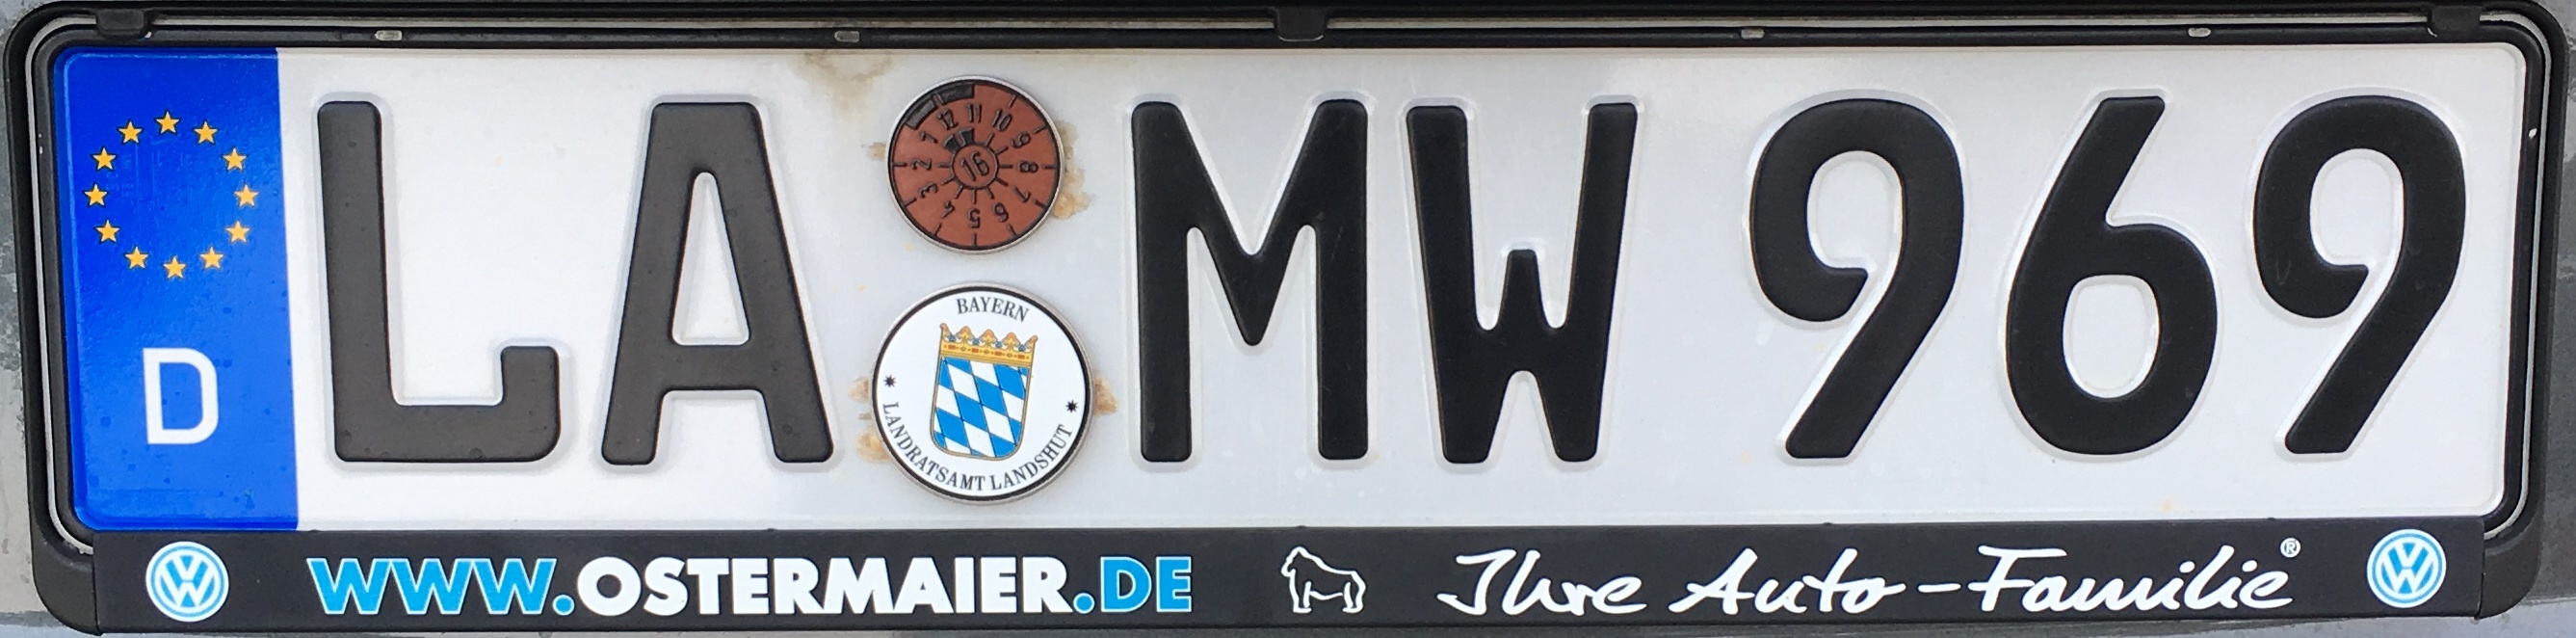 Registrační značky Německo - LA - Landshut, foto: vlastní